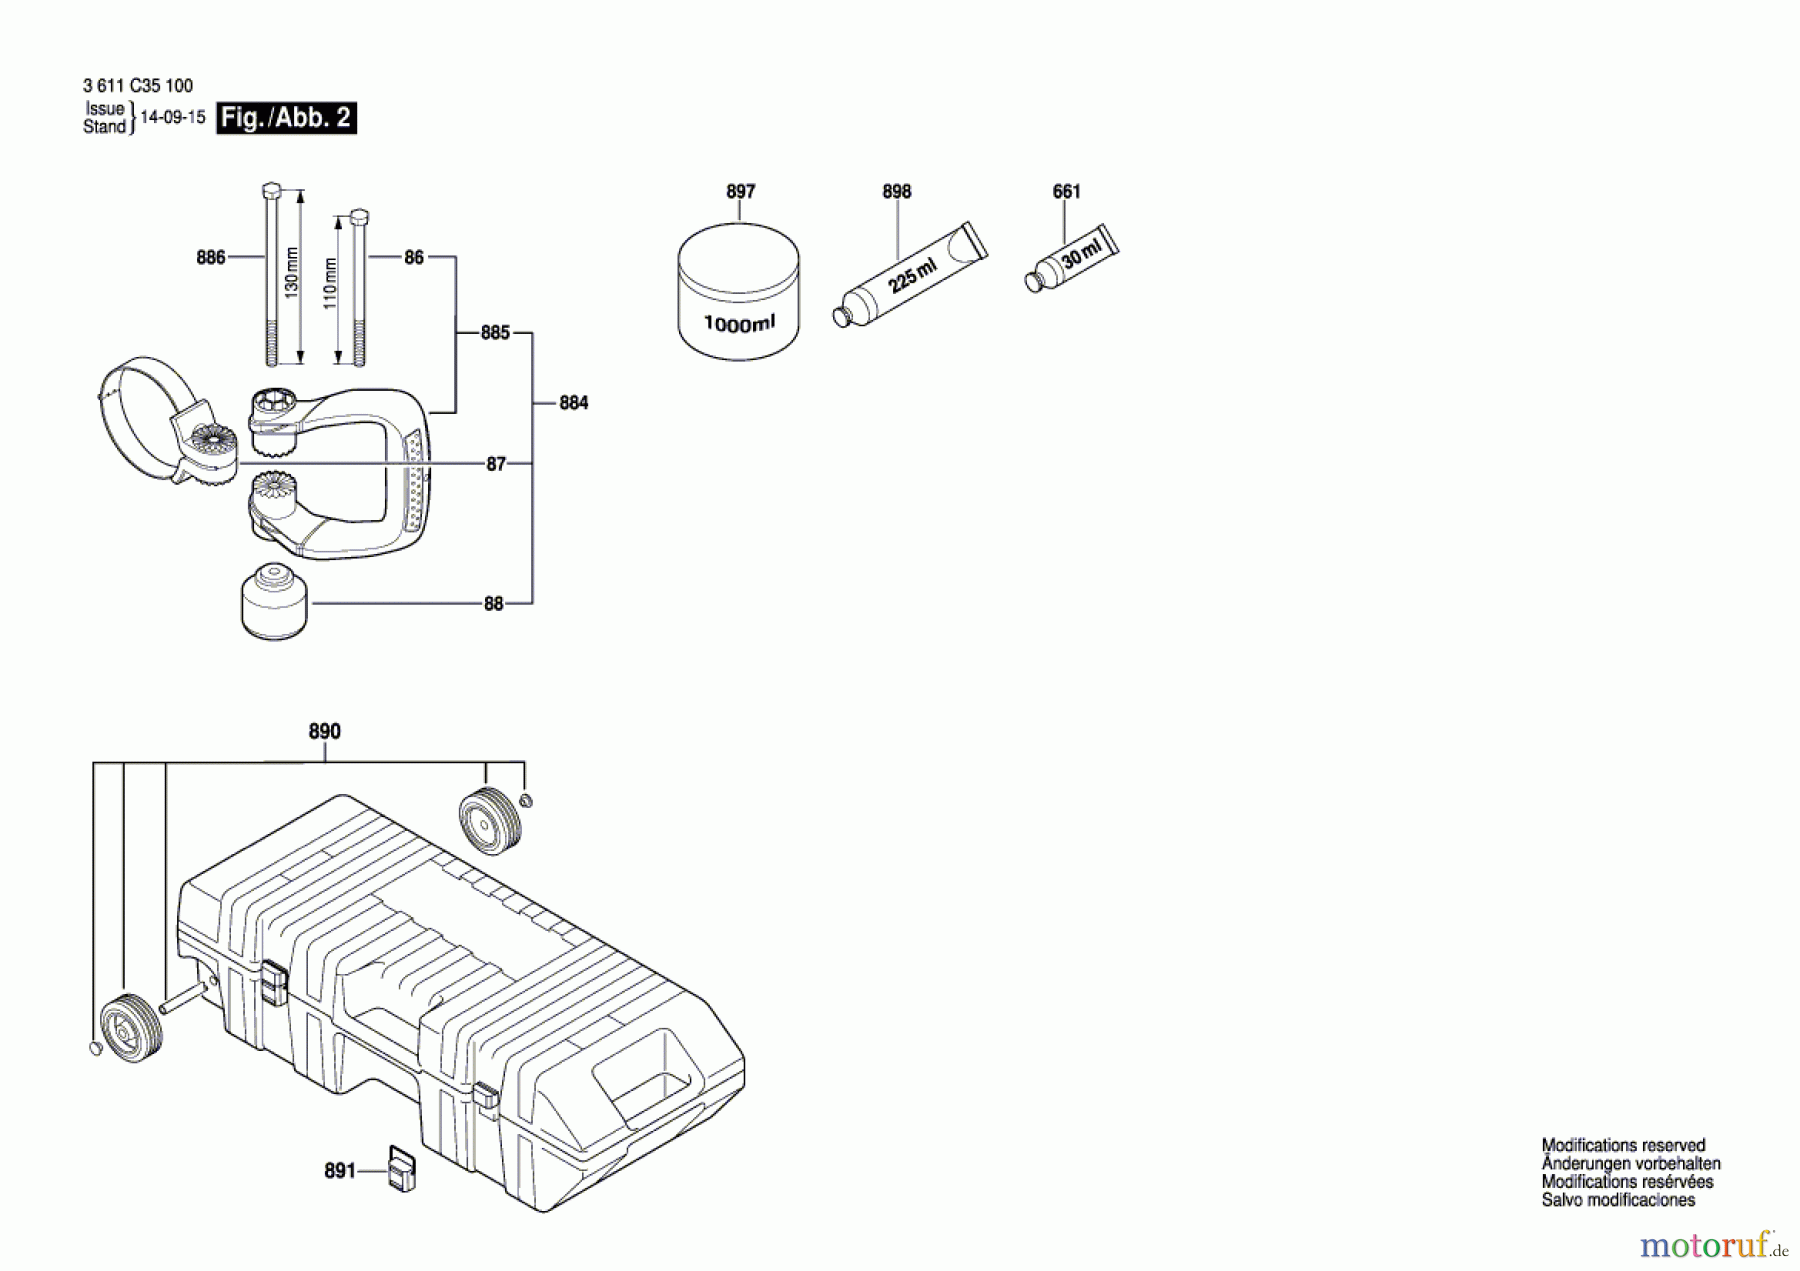  Bosch Werkzeug Schlaghammer GSH 16-30 Seite 2